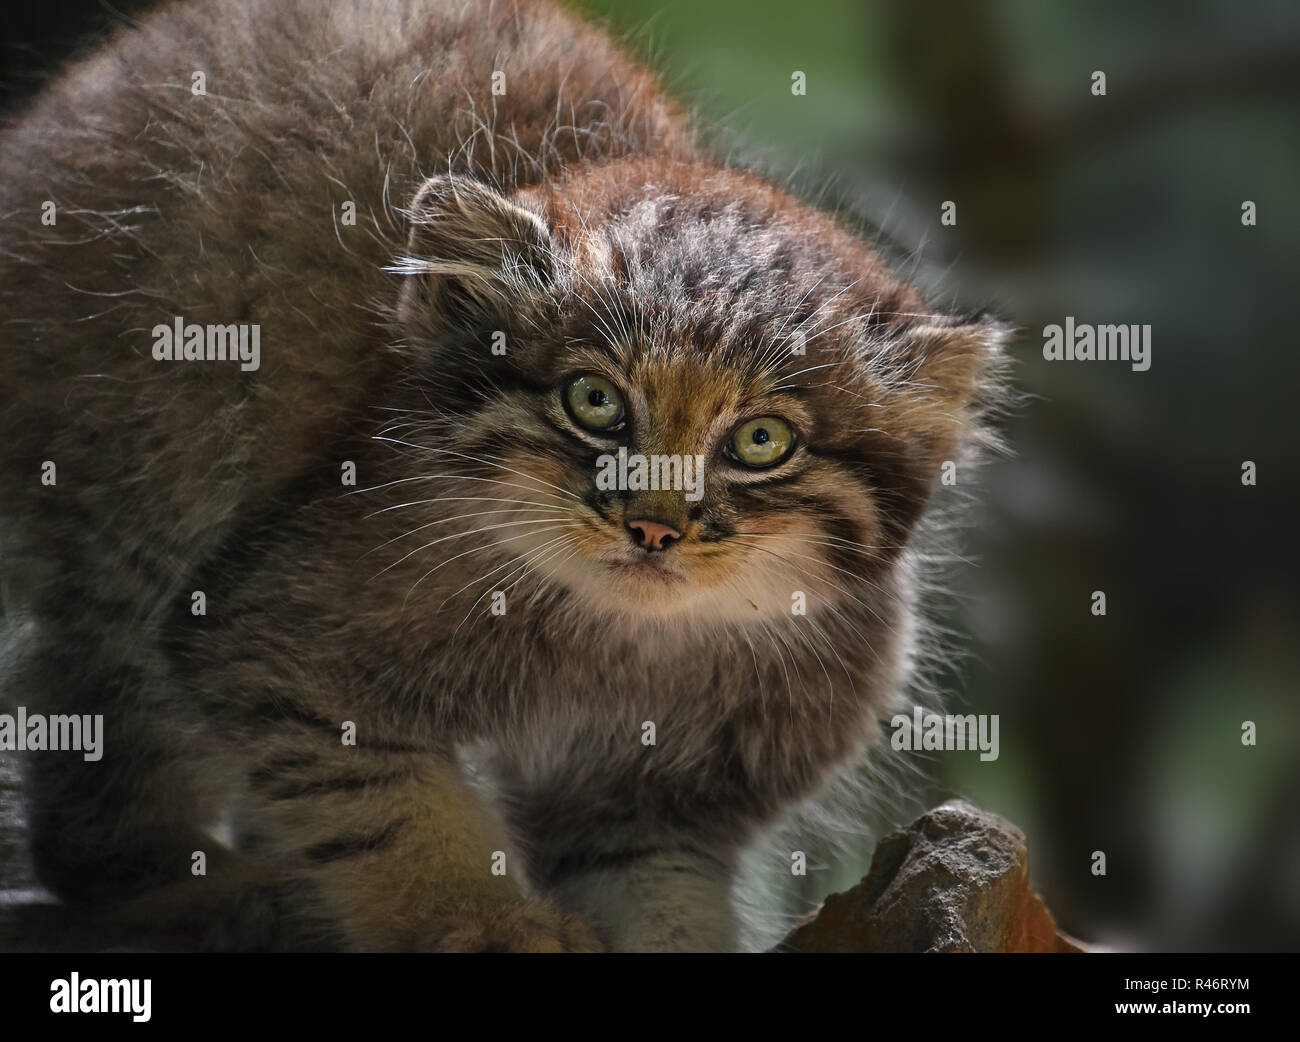 Nahaufnahme, Porträt einer niedlichen Manul Kätzchen (des Pallas Katze oder Otocolobus manul) an der Kamera suchen, Low Angle View Stockfoto